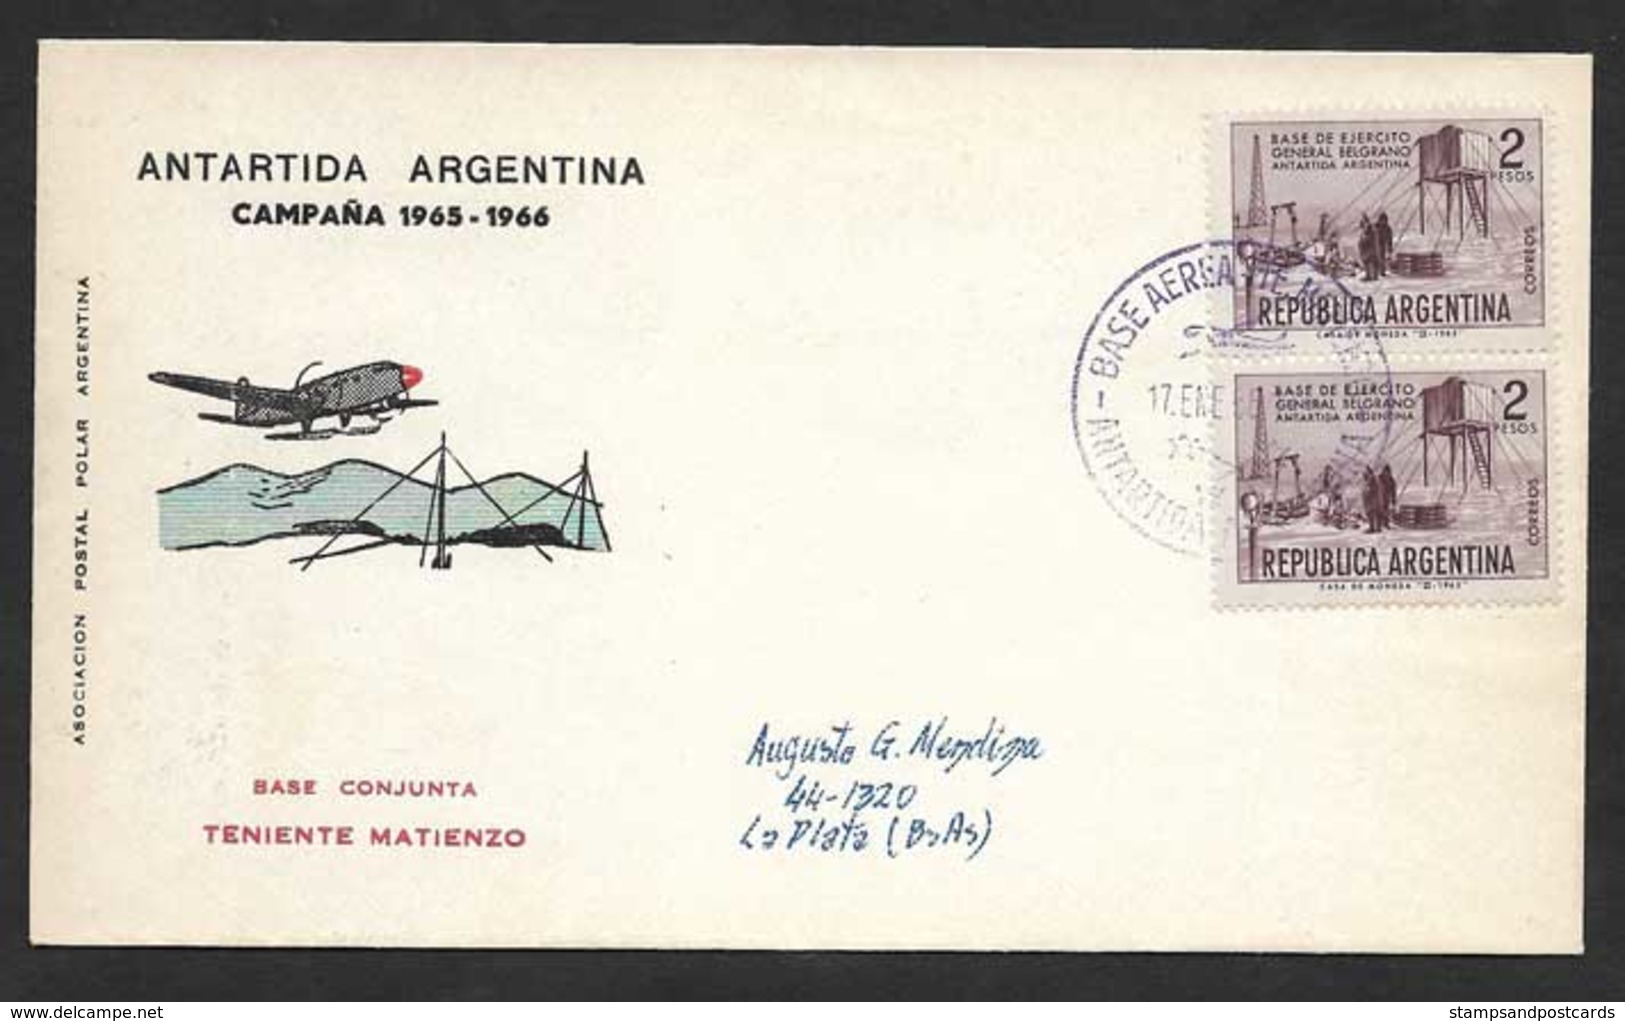 Argentine Base Aerienne Teniente Matienzo Antarctique 1966 Argentina Antartic Aerial Base - Voli Polari